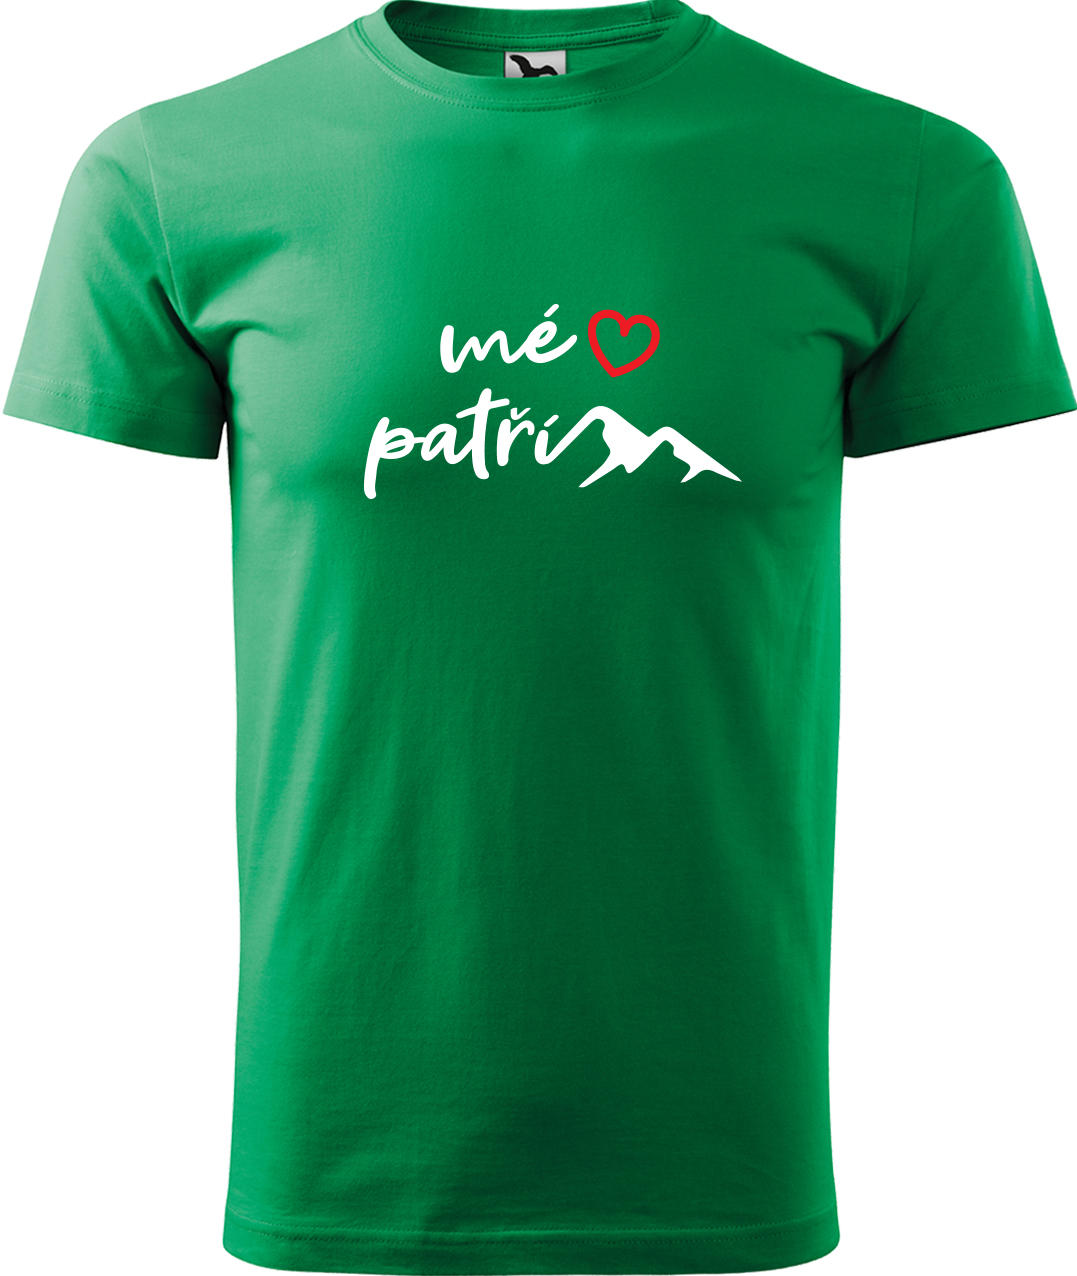 Pánské tričko na hory - Mé srdce patří horám Velikost: XL, Barva: Středně zelená (16), Střih: pánský